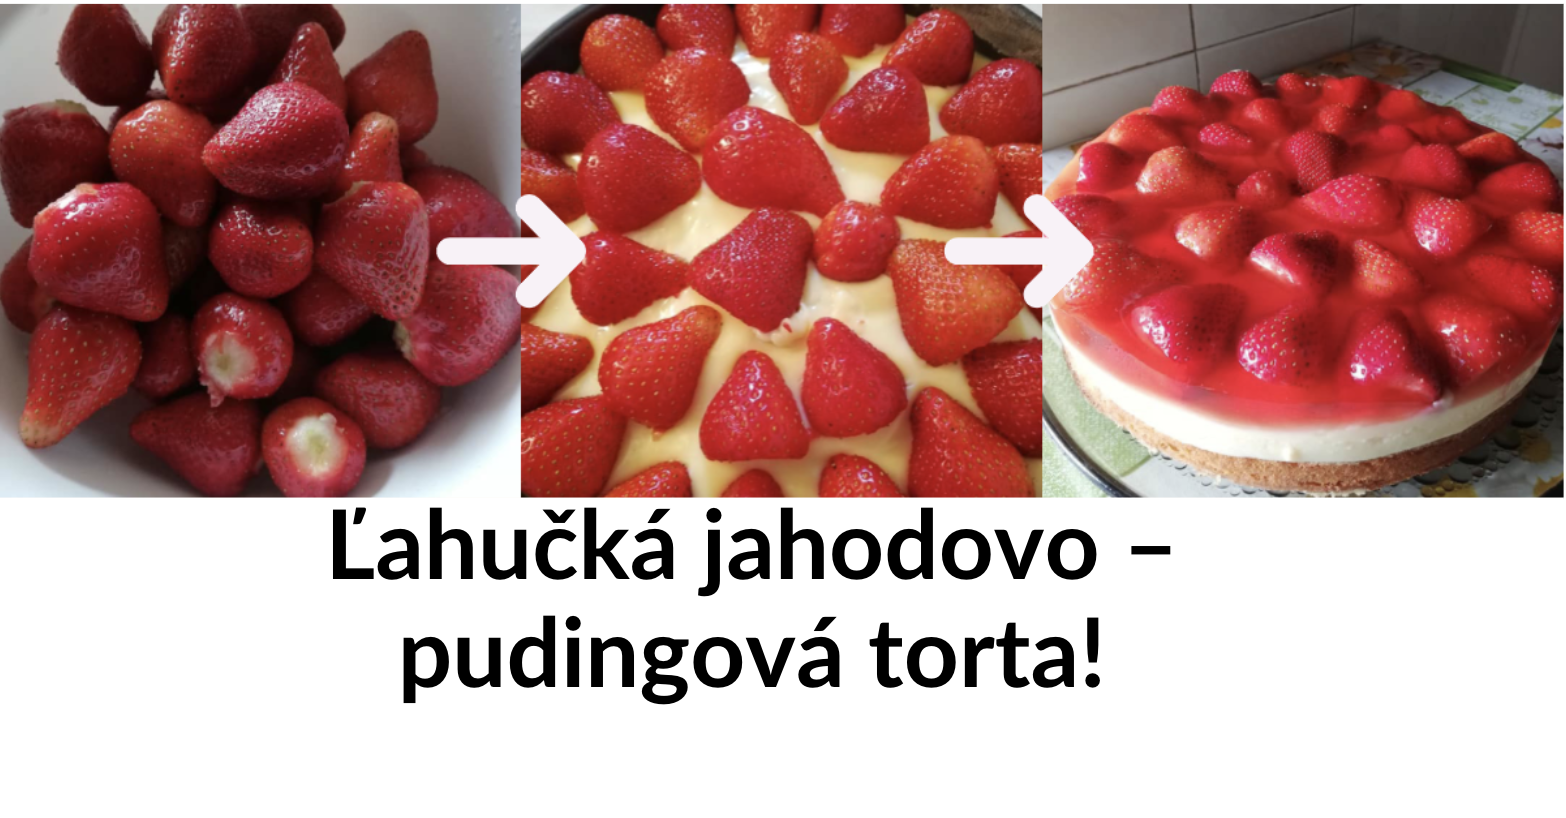 Pre závislých na jahodách: Ľahučká jahodovo – pudingová torta!